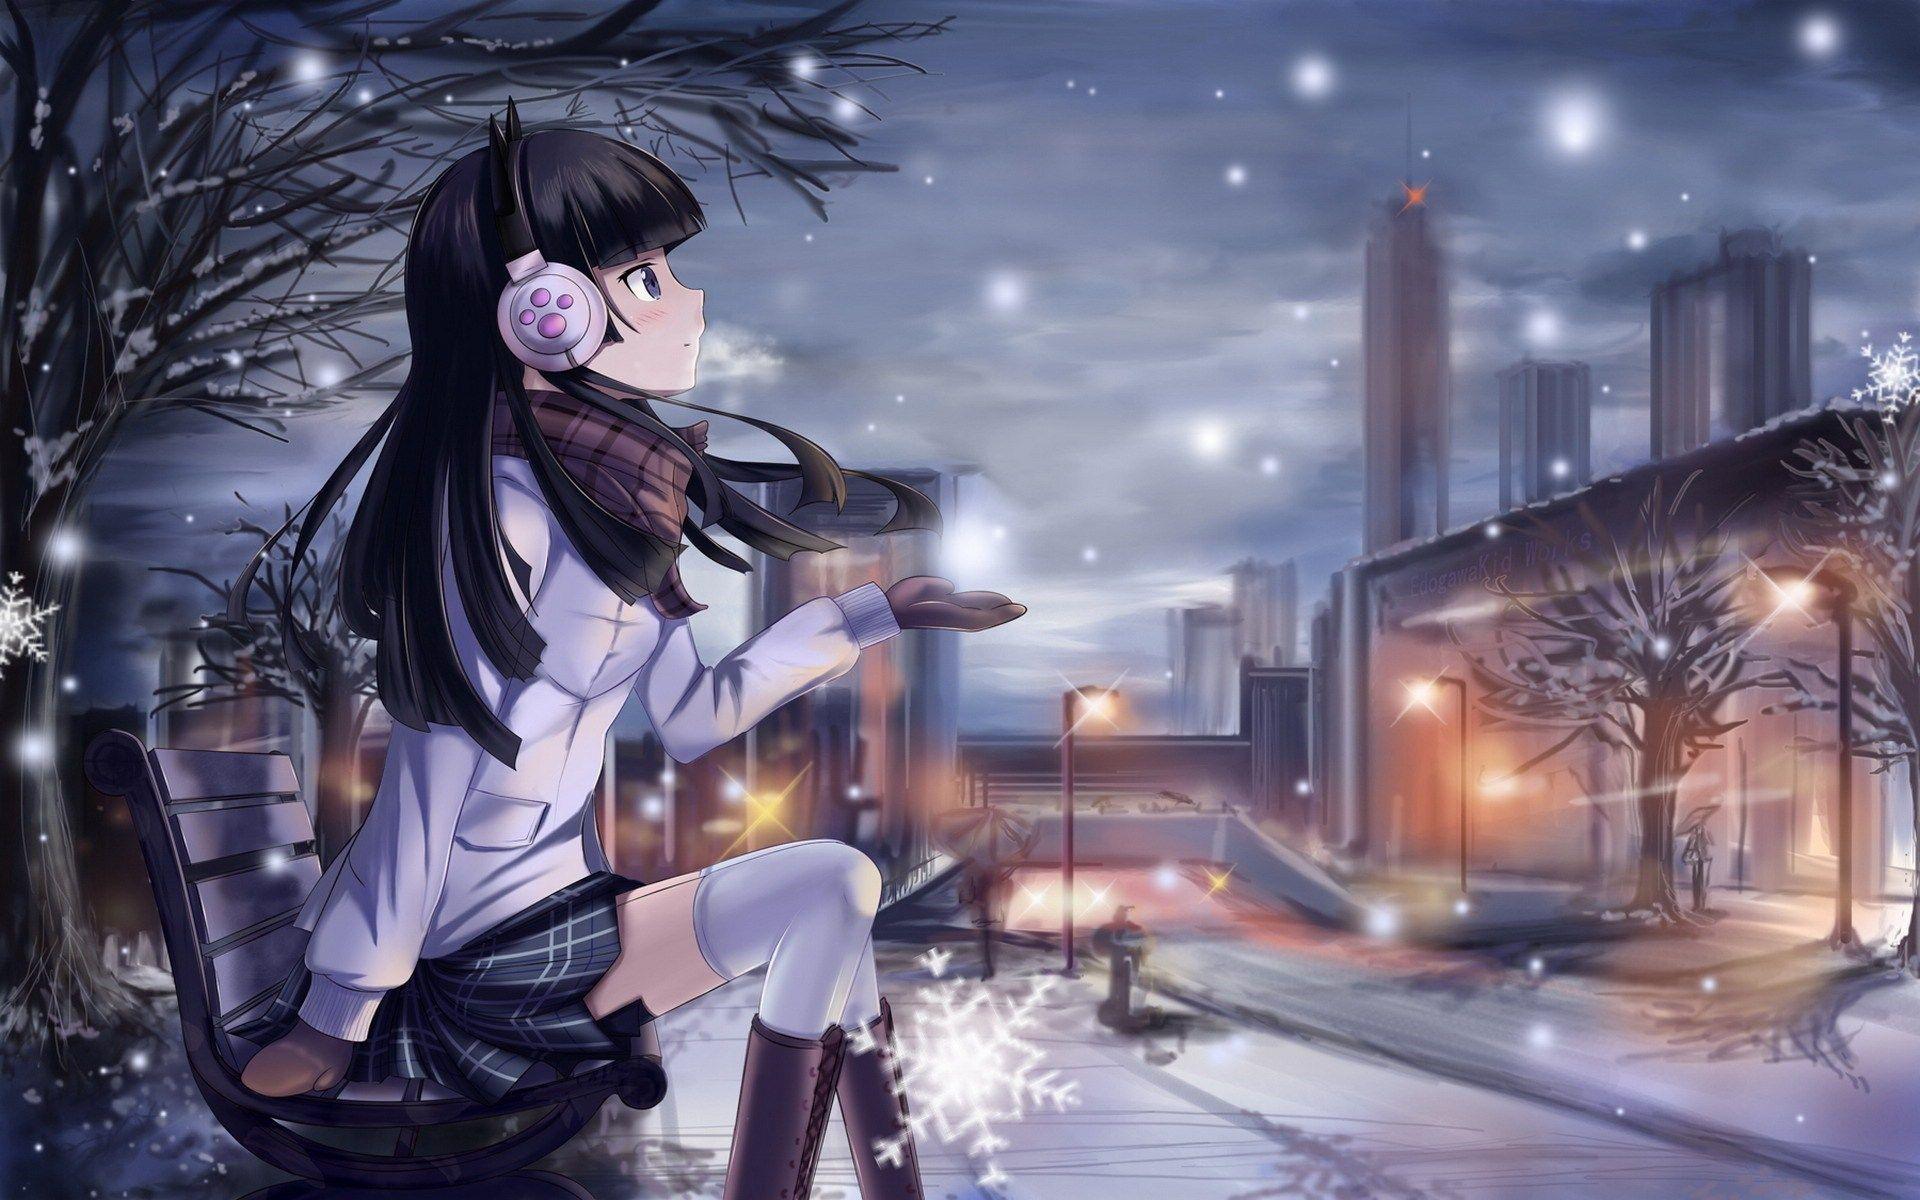 Beautiful Winter Anime Picture. Digiatto.com